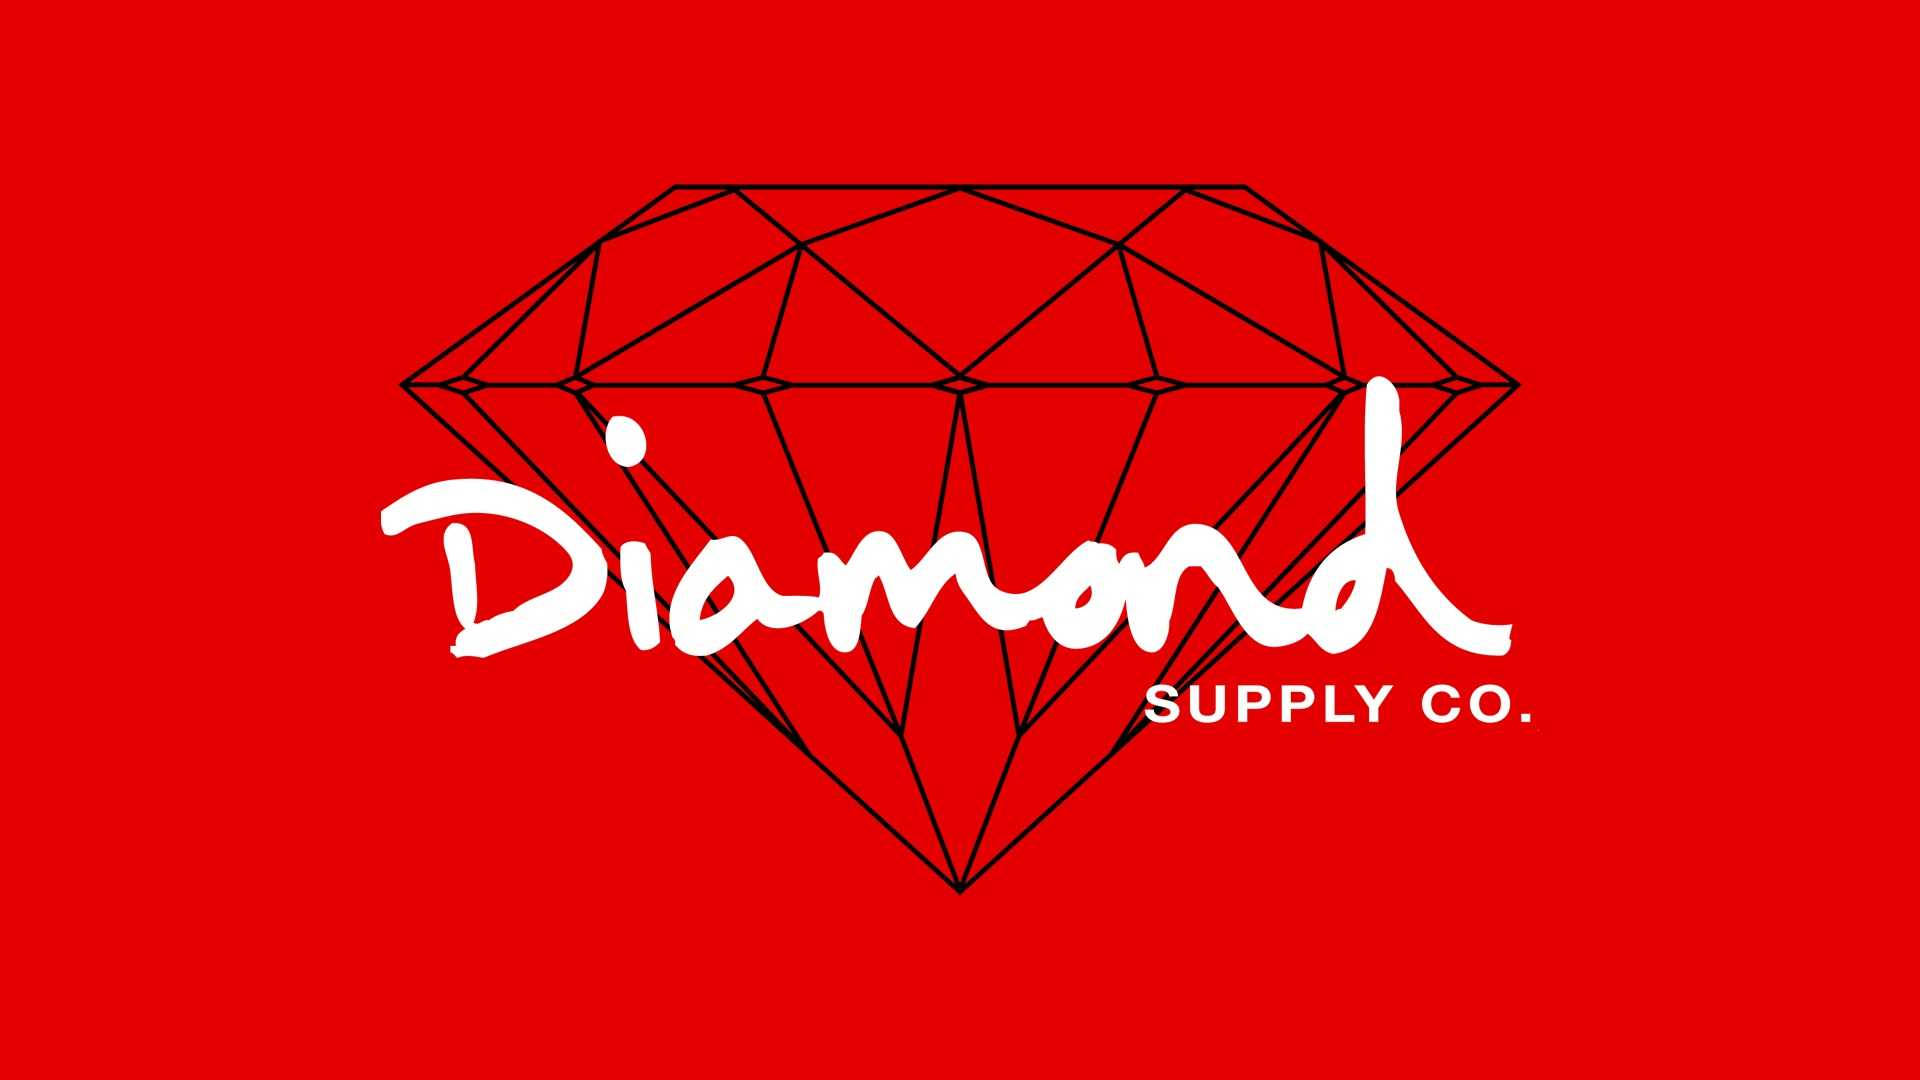 Logode Diamond Supply Co En Rojo Fondo de pantalla